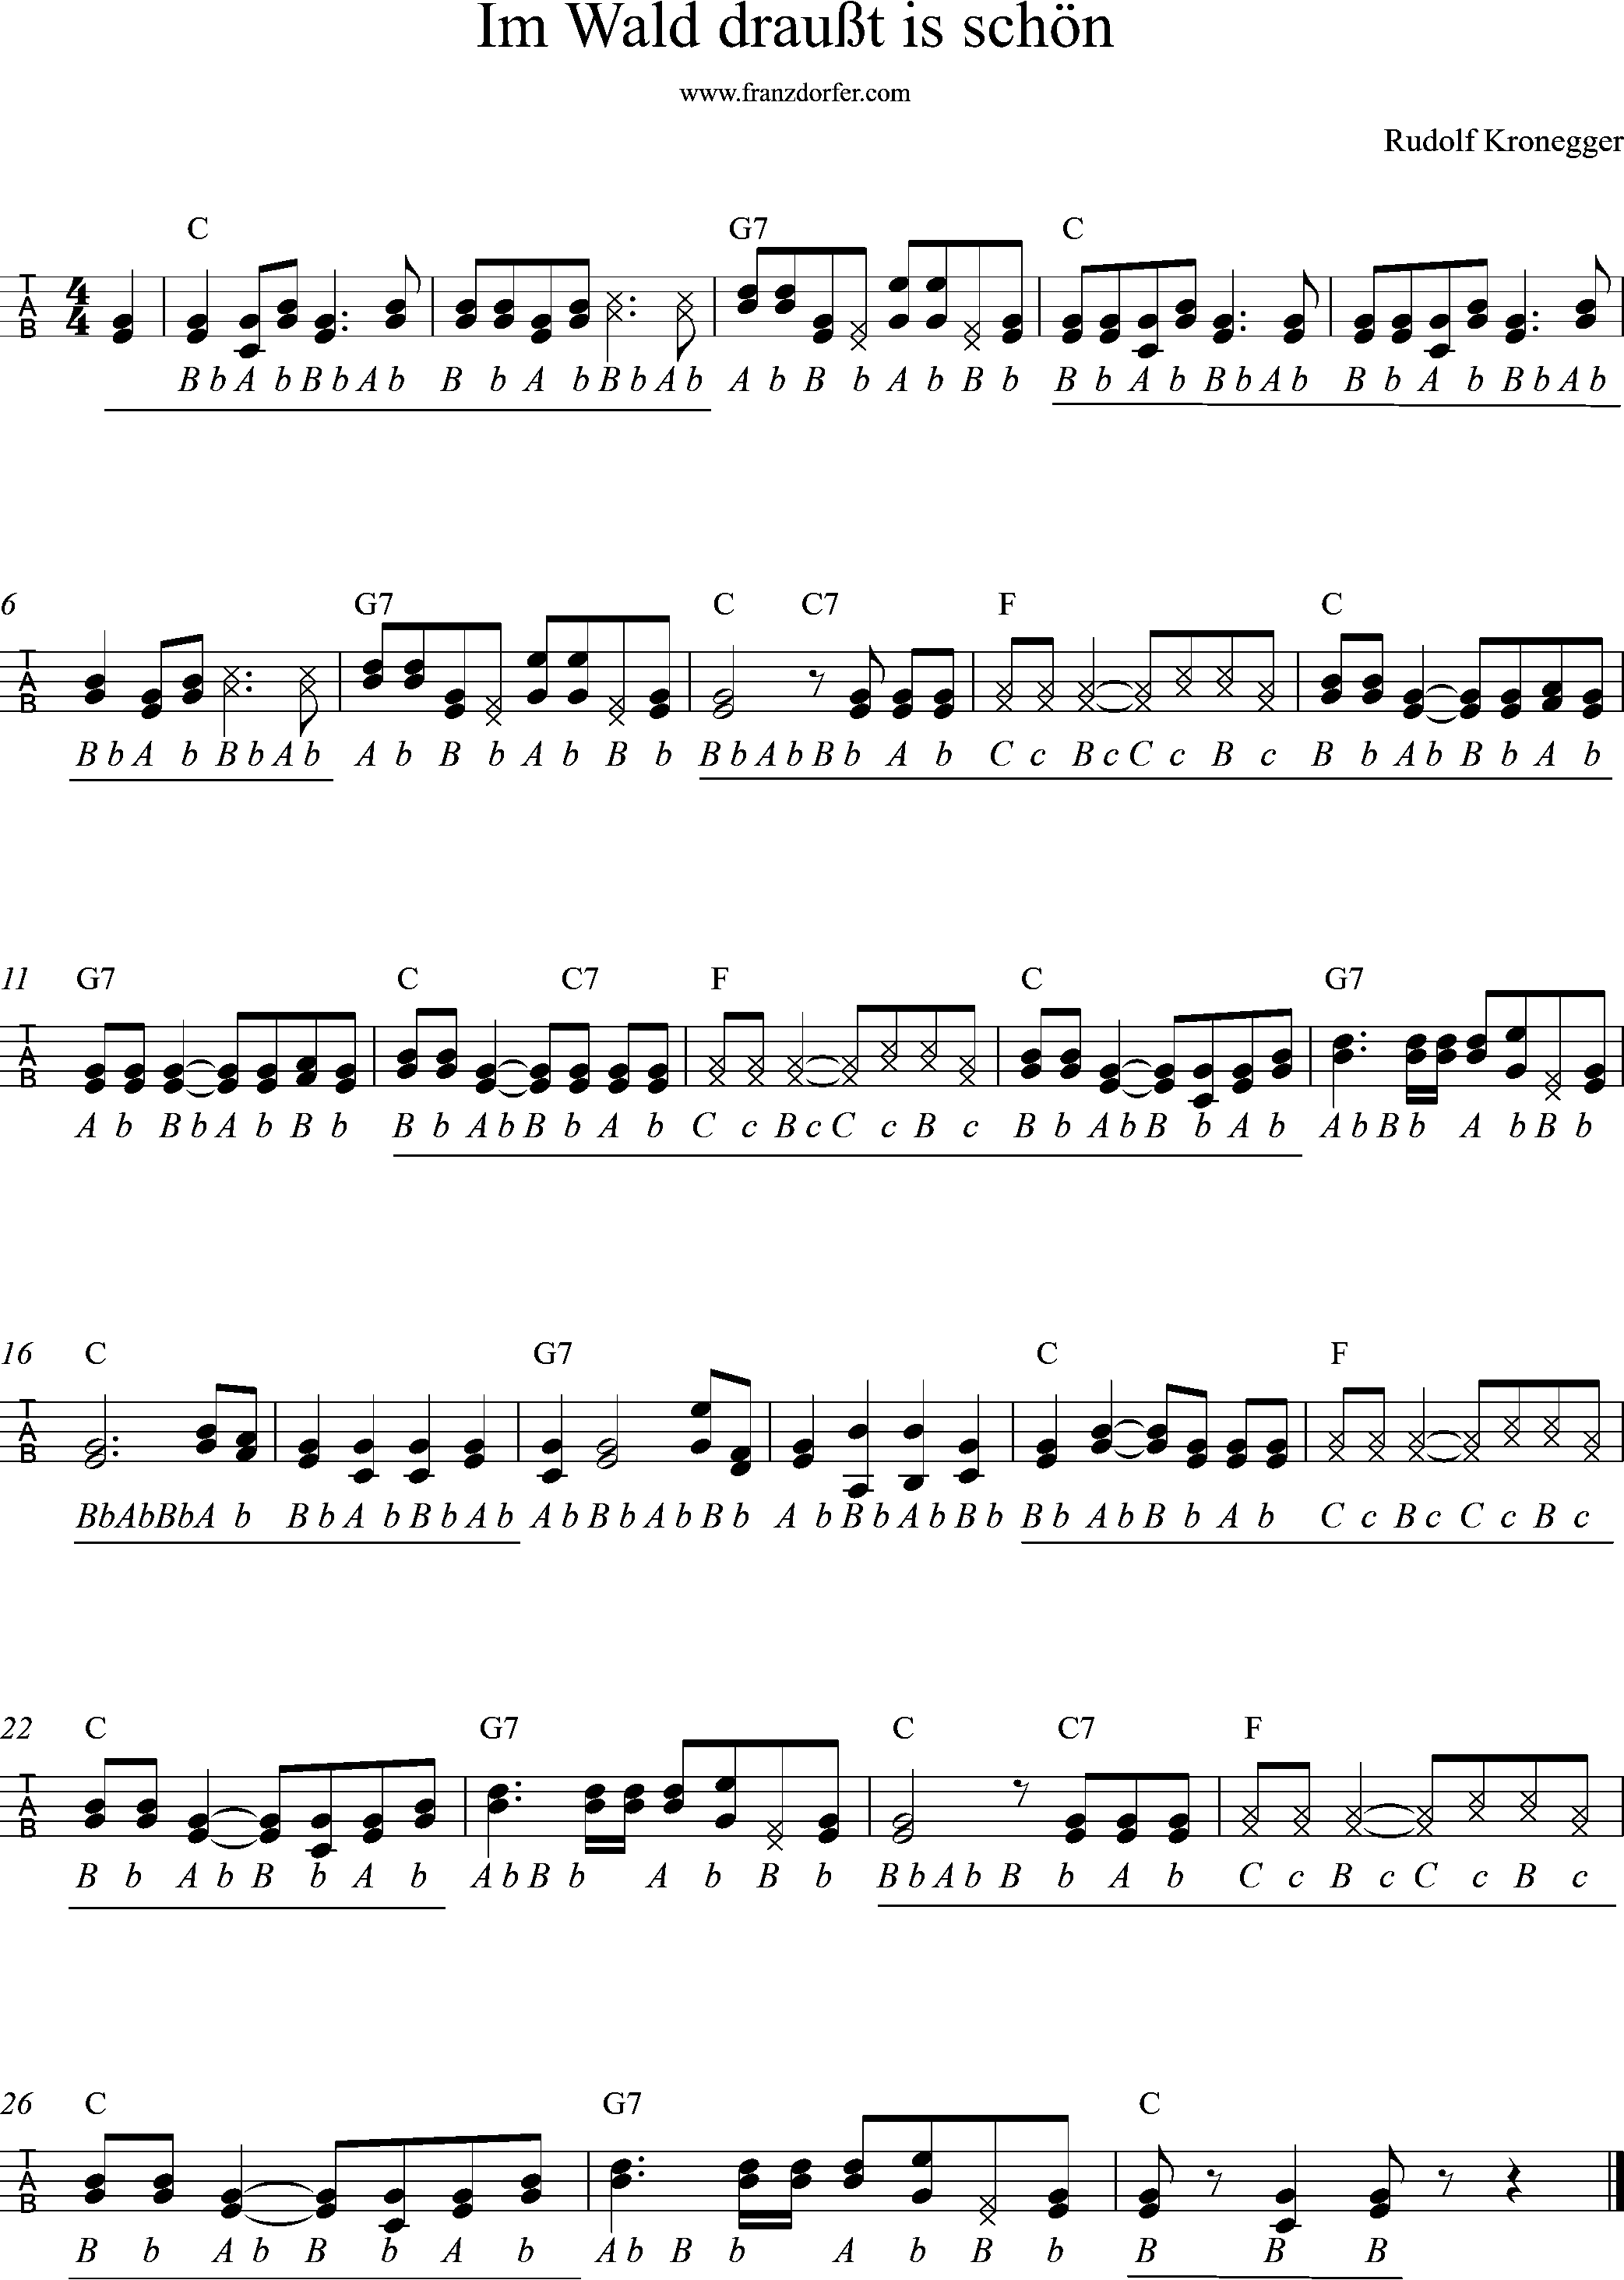 noten für steirische harmonika, im wald drausst is schön